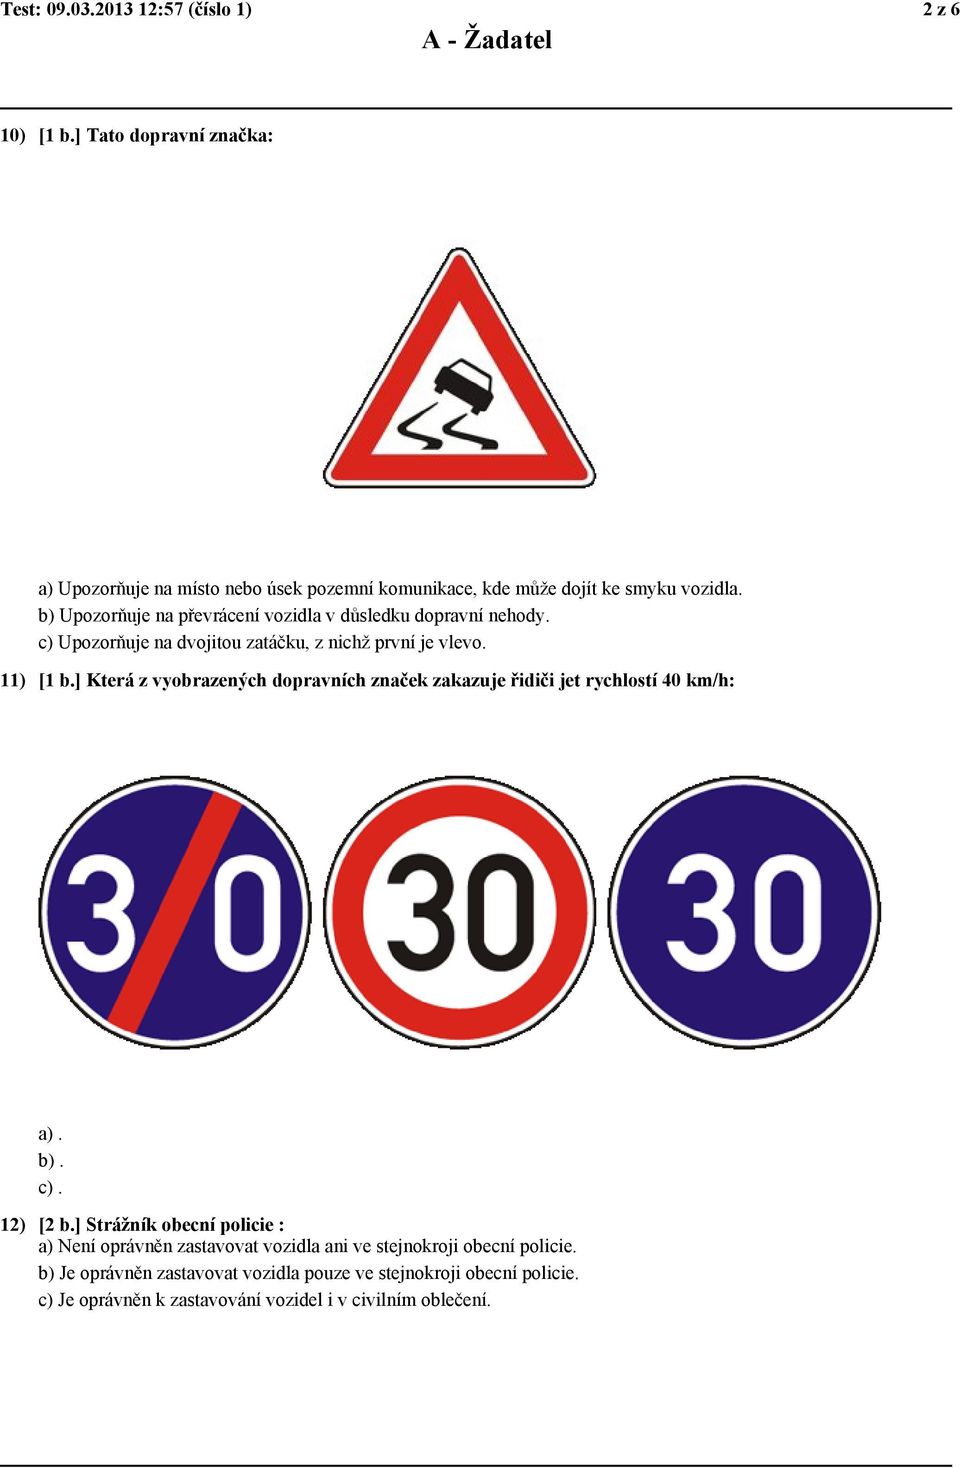 b) Upozorňuje na převrácení vozidla v důsledku dopravní nehody. c) Upozorňuje na dvojitou zatáčku, z nichž první je vlevo. 11) [1 b.